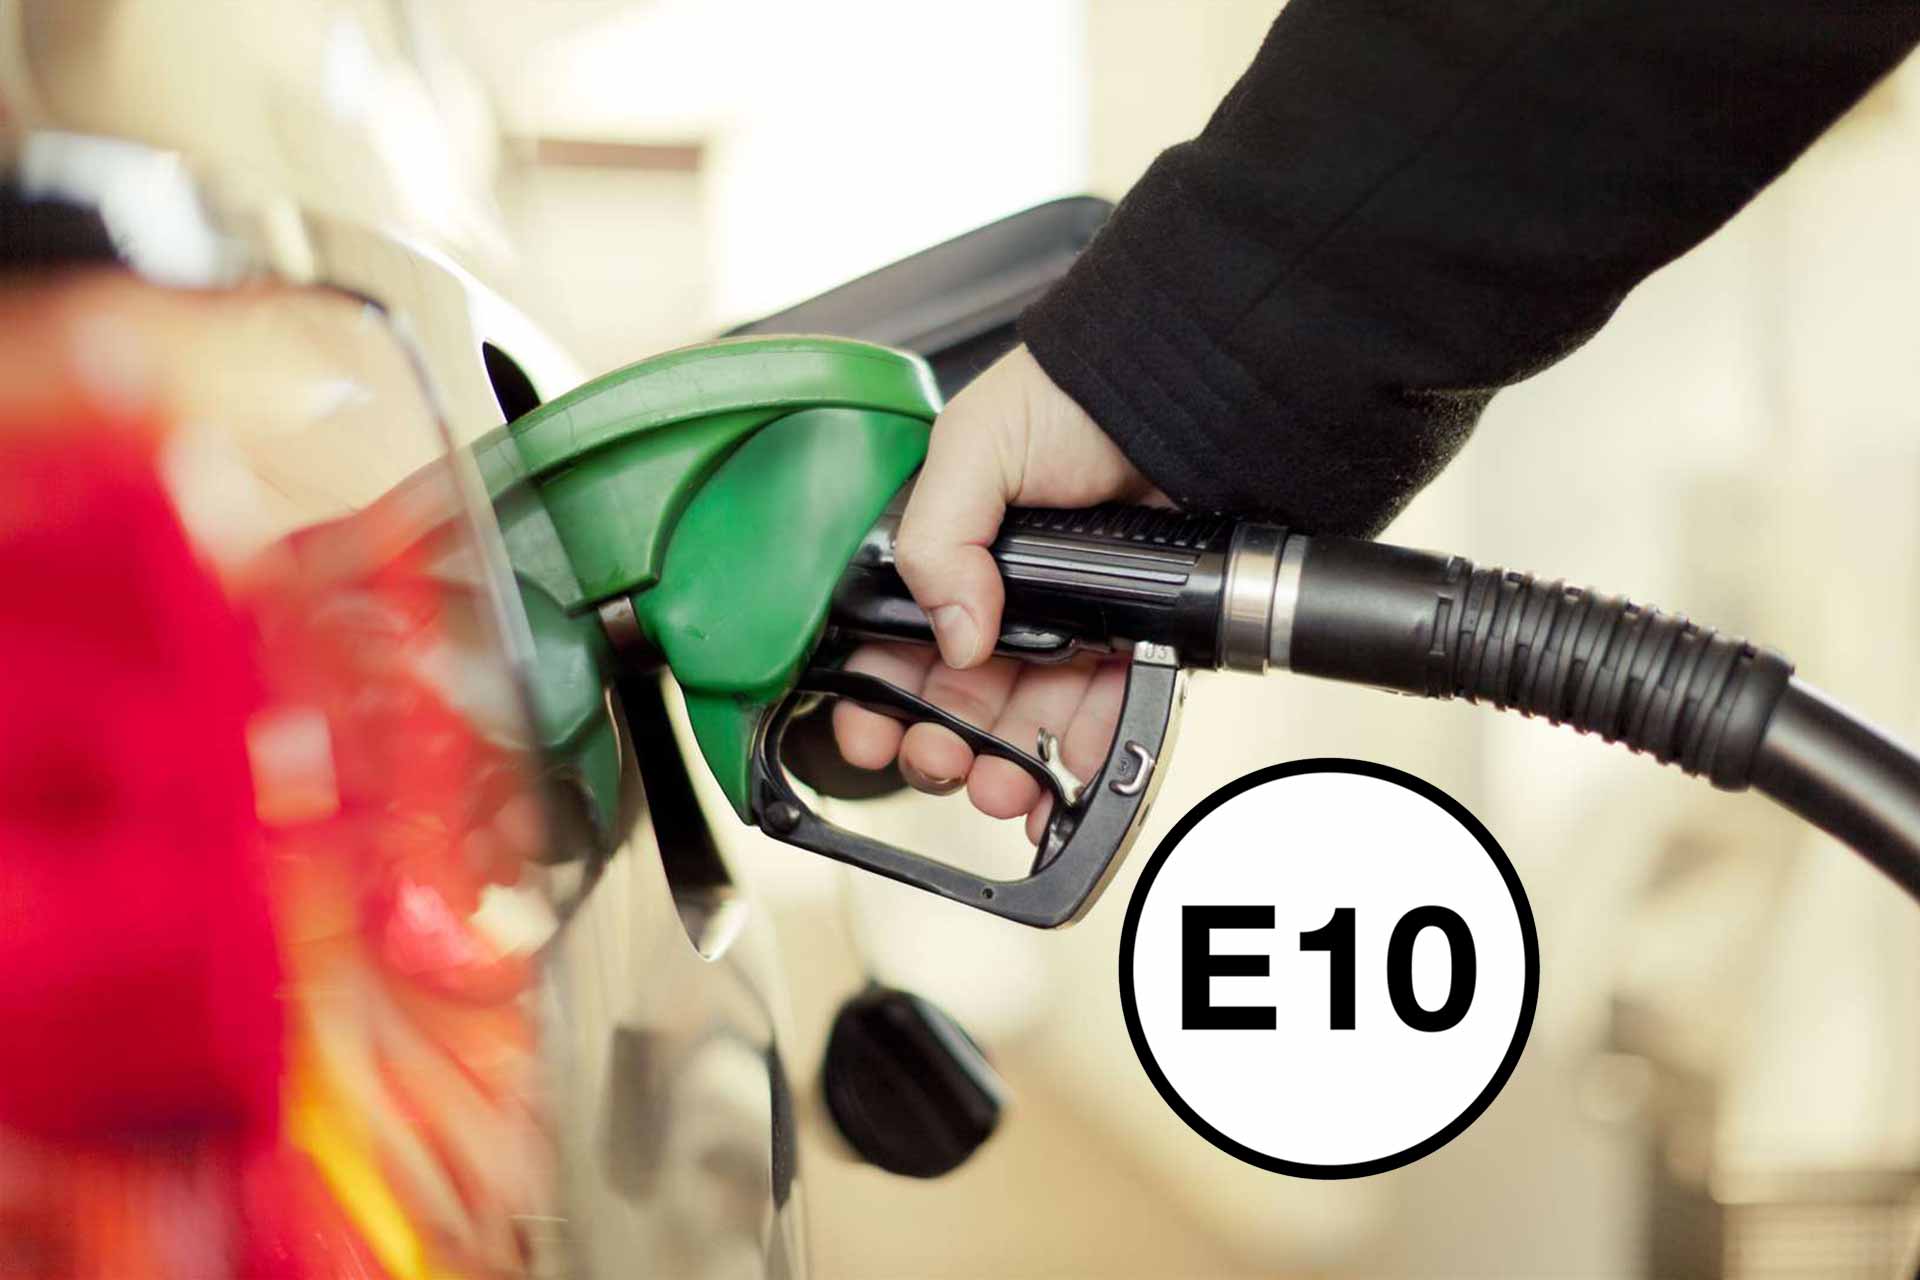 E10 petrol